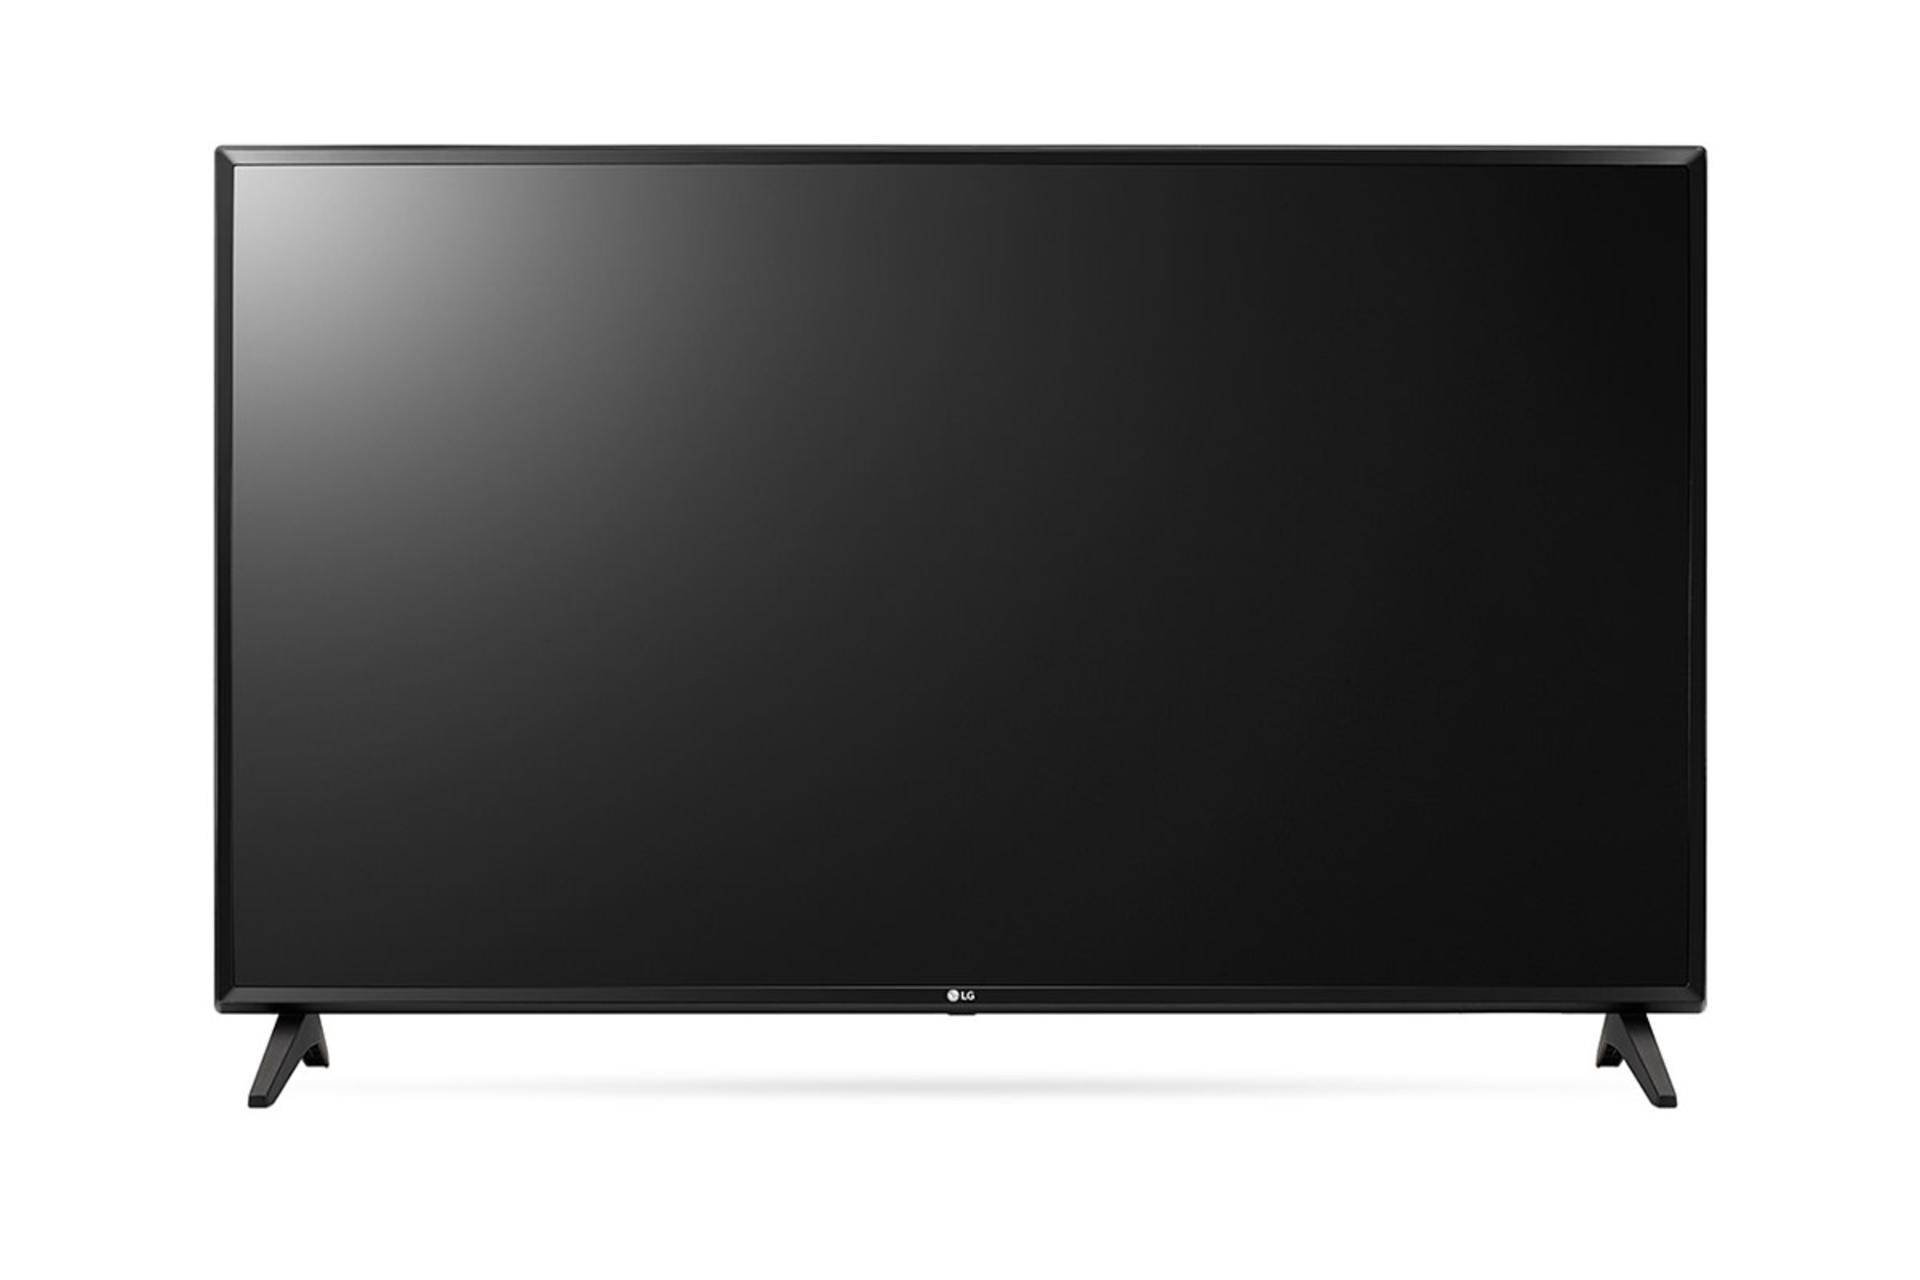 نمای جلو  تلویزیون ال جی LJ5500 مدل 43 اینچ با رنگ مشکی و صفحه خاموش